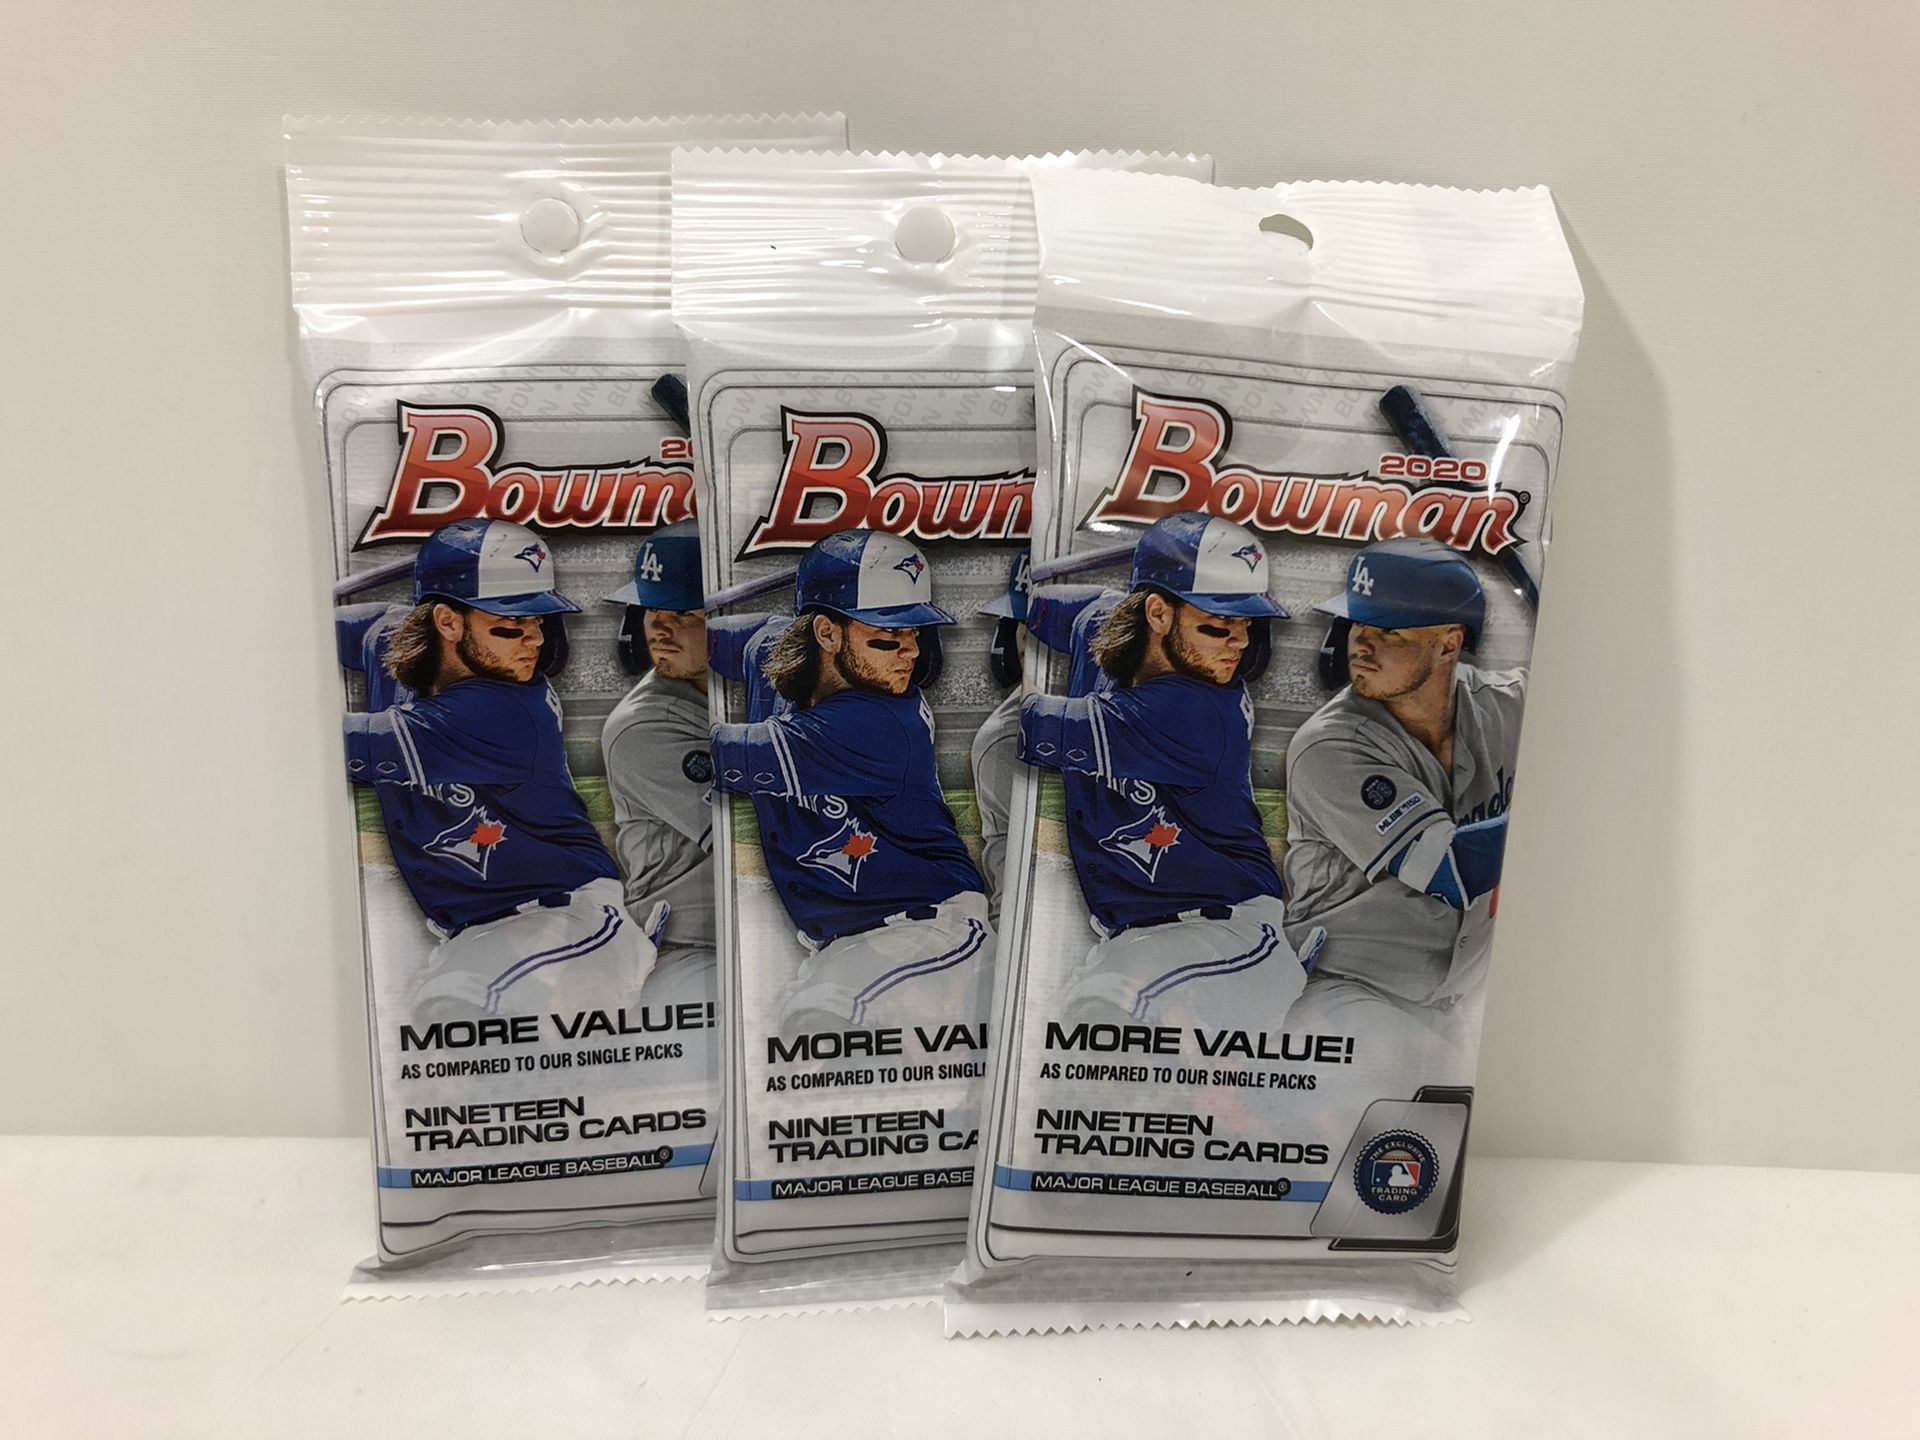 Lot of 3 fat packs Topps 2020 MLB baseball cards Bowman brand new sealed